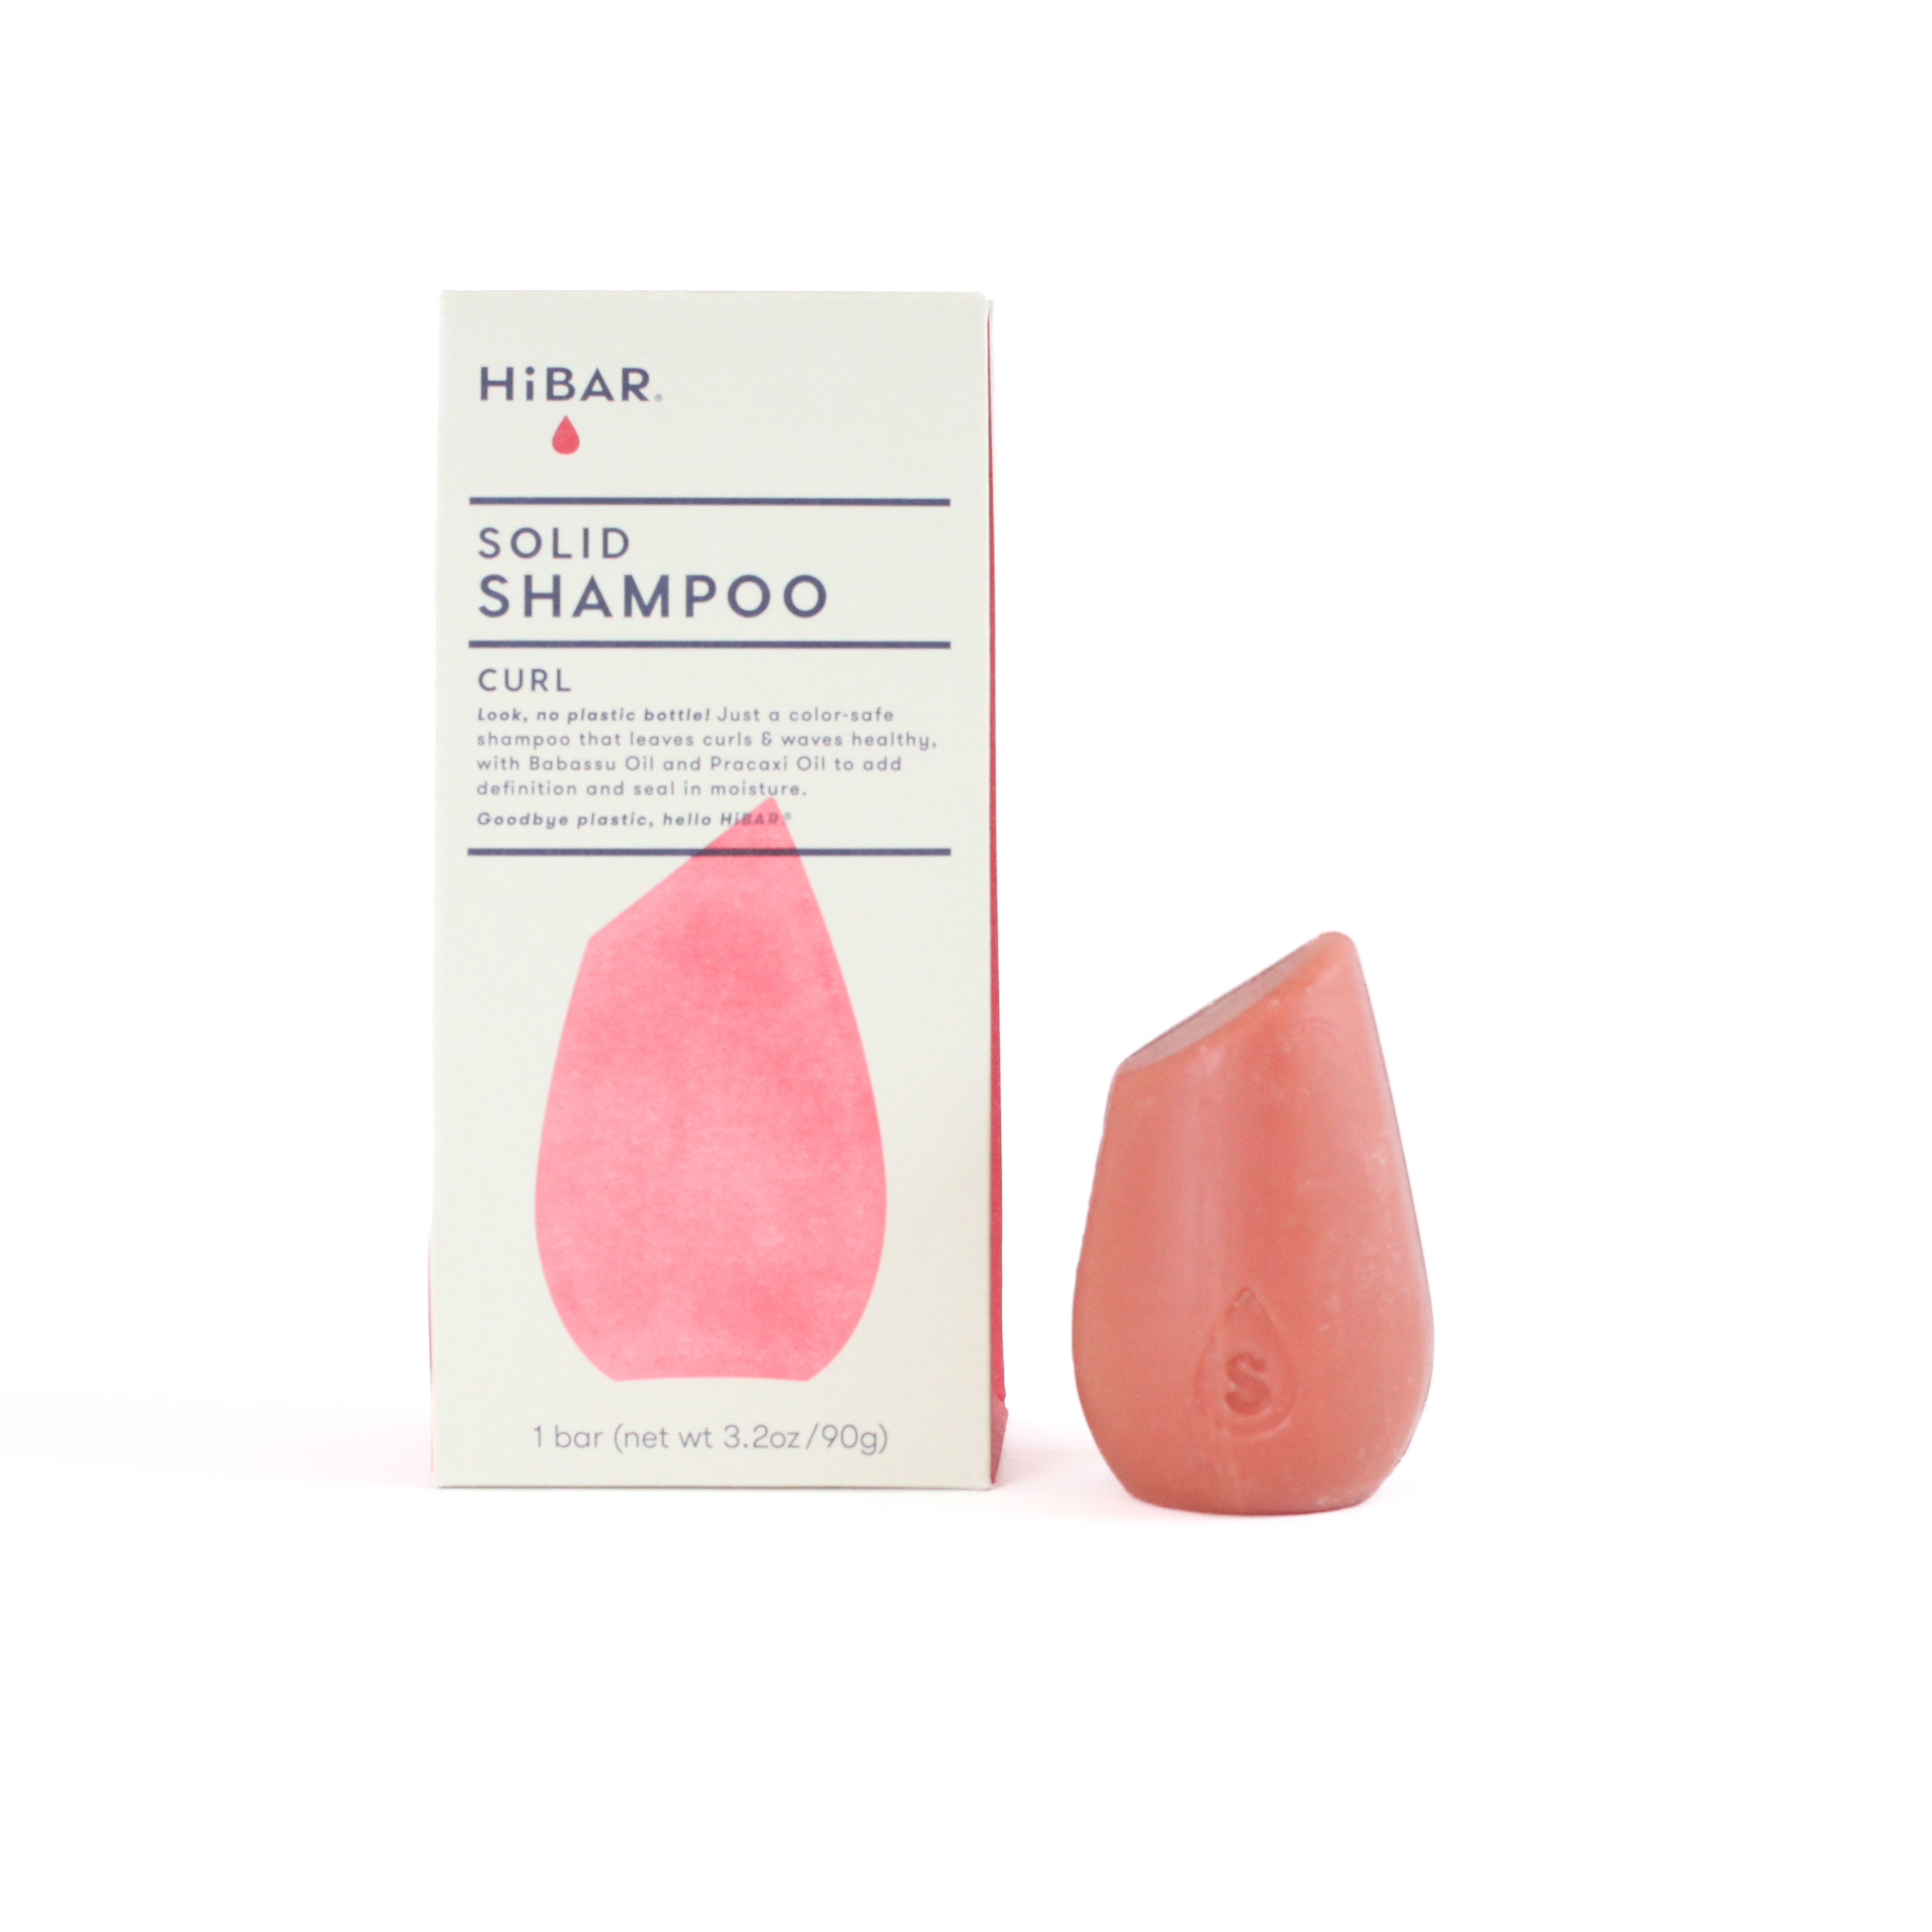 HiBAR Shampoo Bar